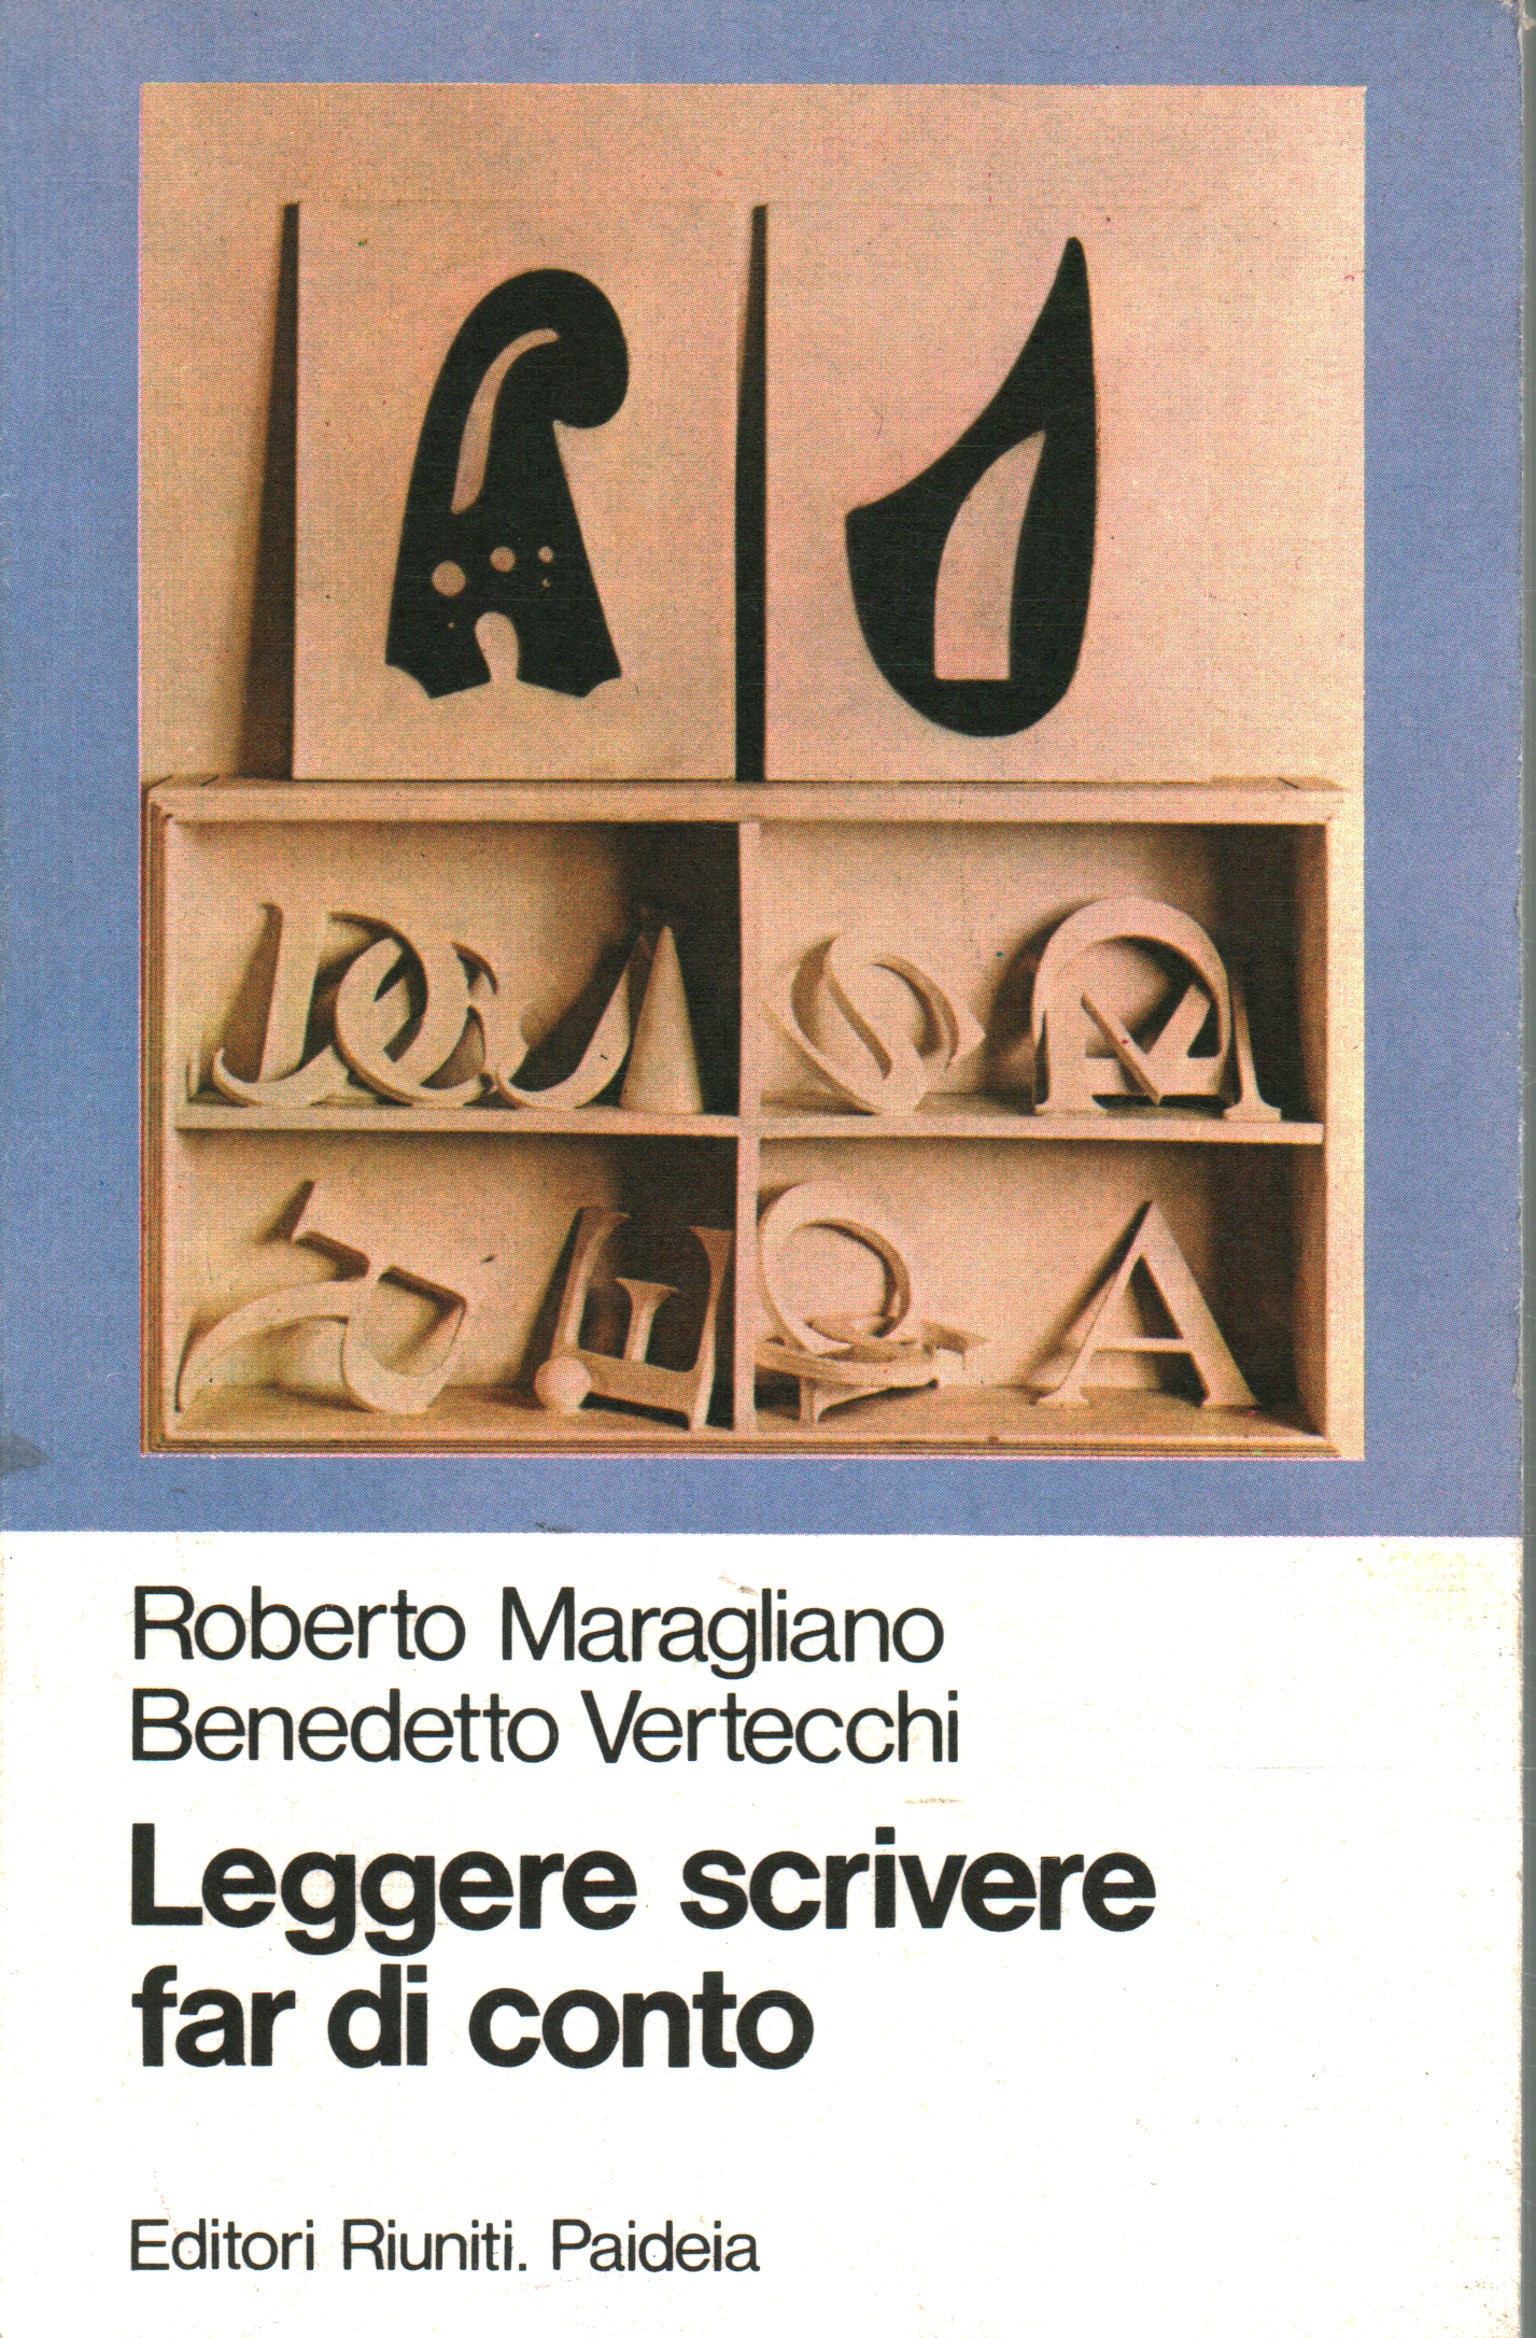 Reading, writing, arithmetic, Roberto Maragliano Benedetto Vertecchi